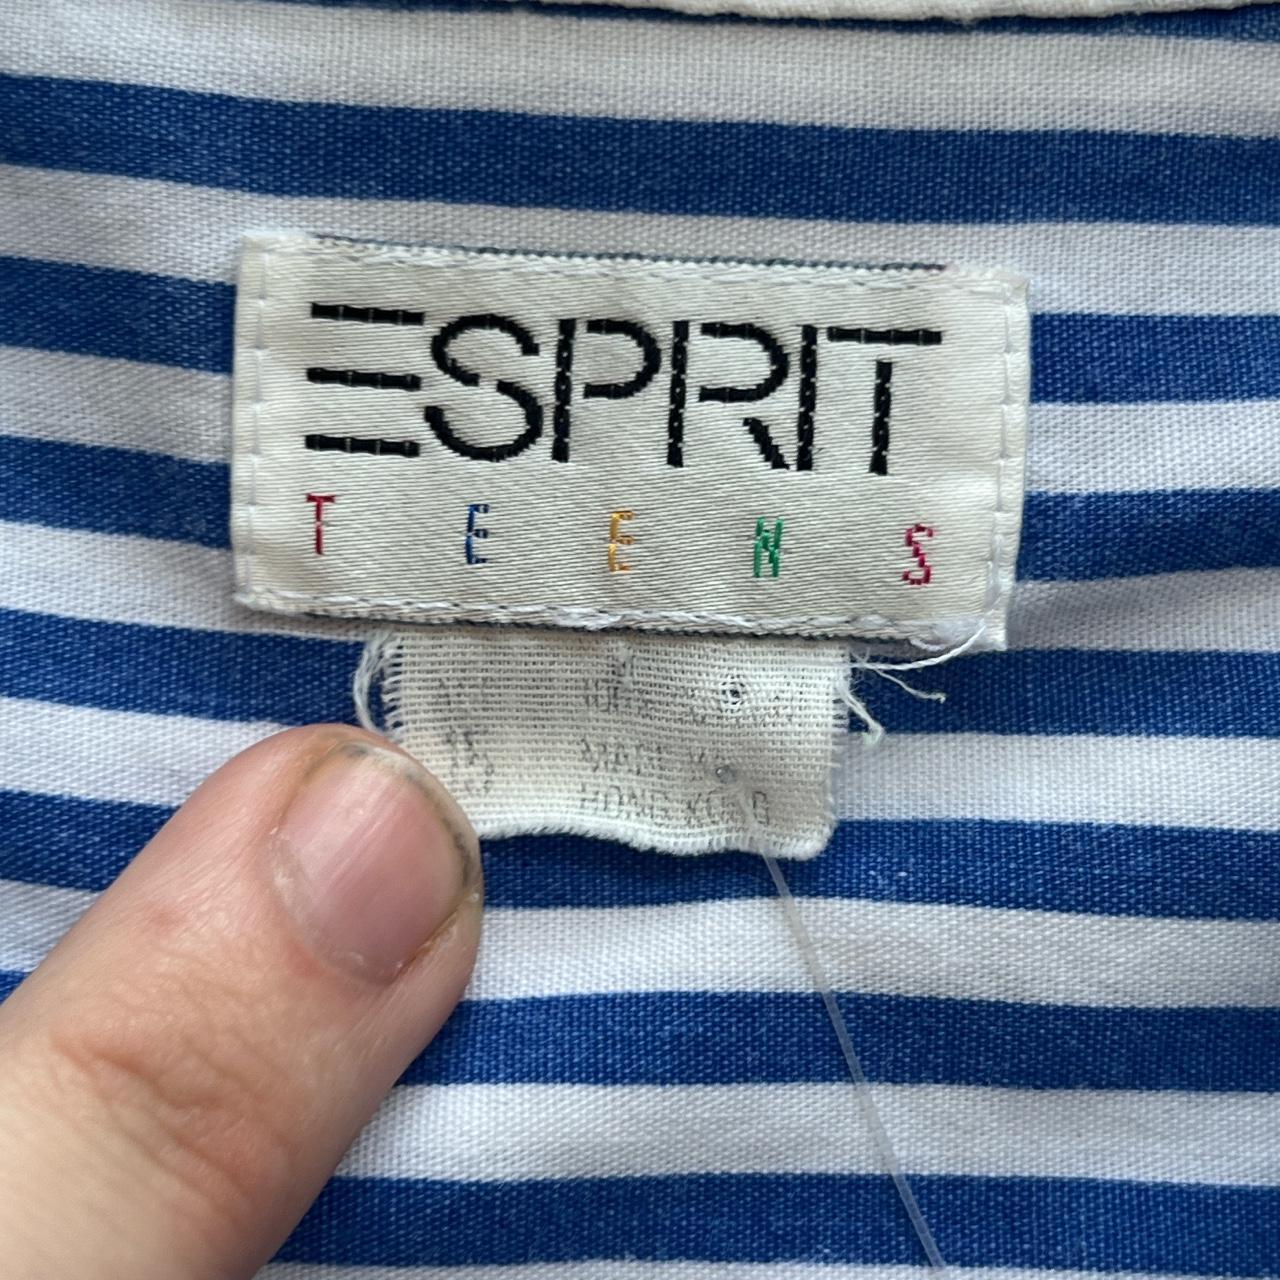 Espirit Women's Blue and White Shirt (3)